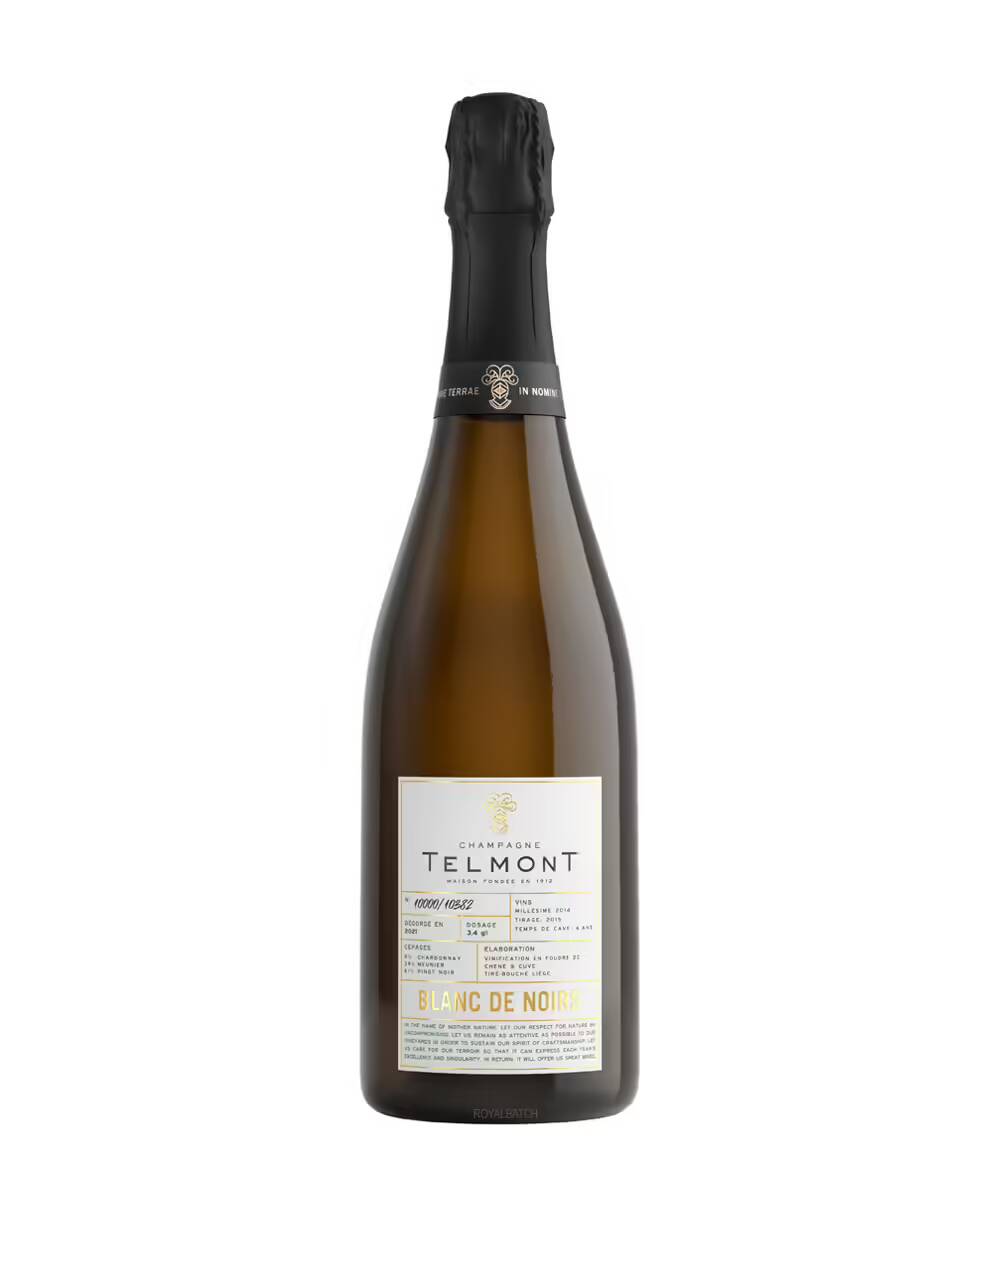 Telmont Blanc De Noirs 2014 Champagne